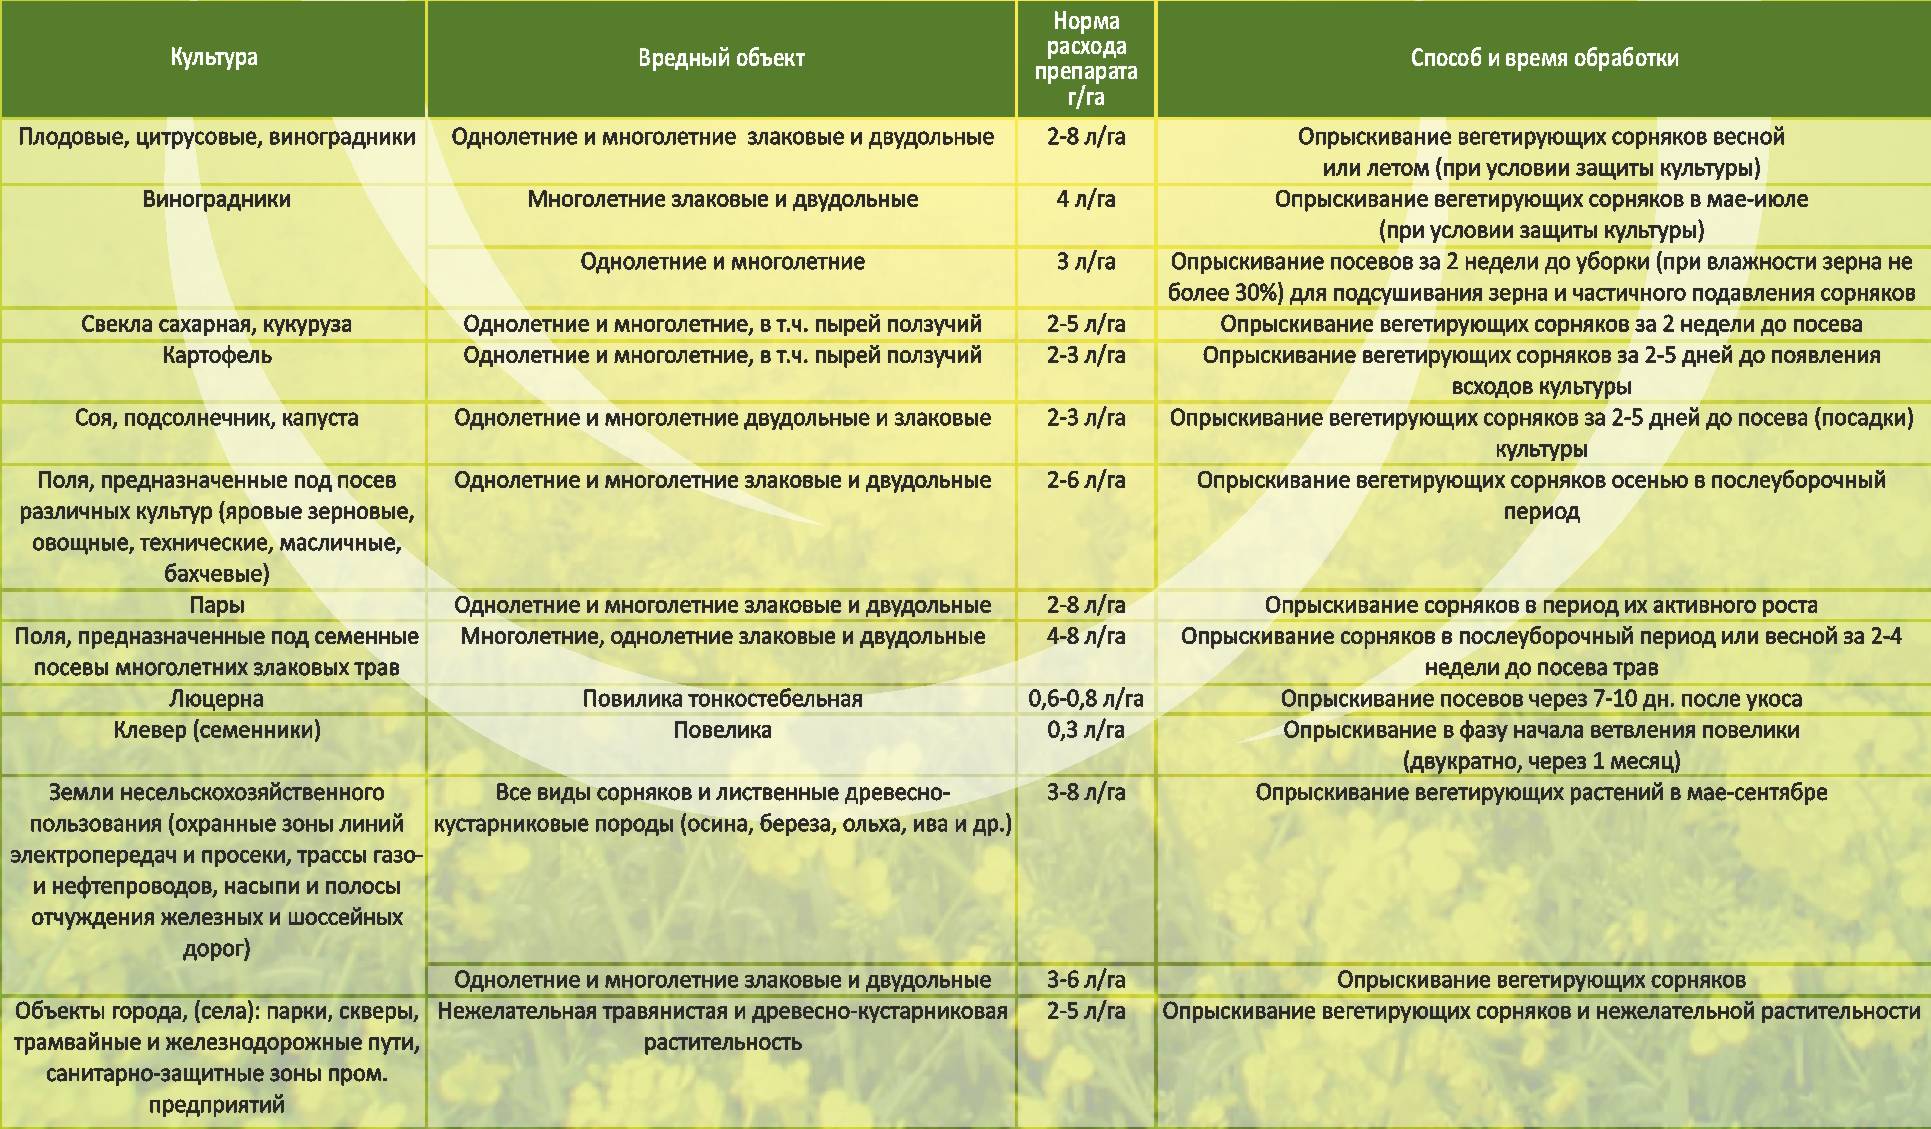 Гербицид граунд: применение от сорняков для различных растений, отзывы, состав, действие, плюсы и минусы